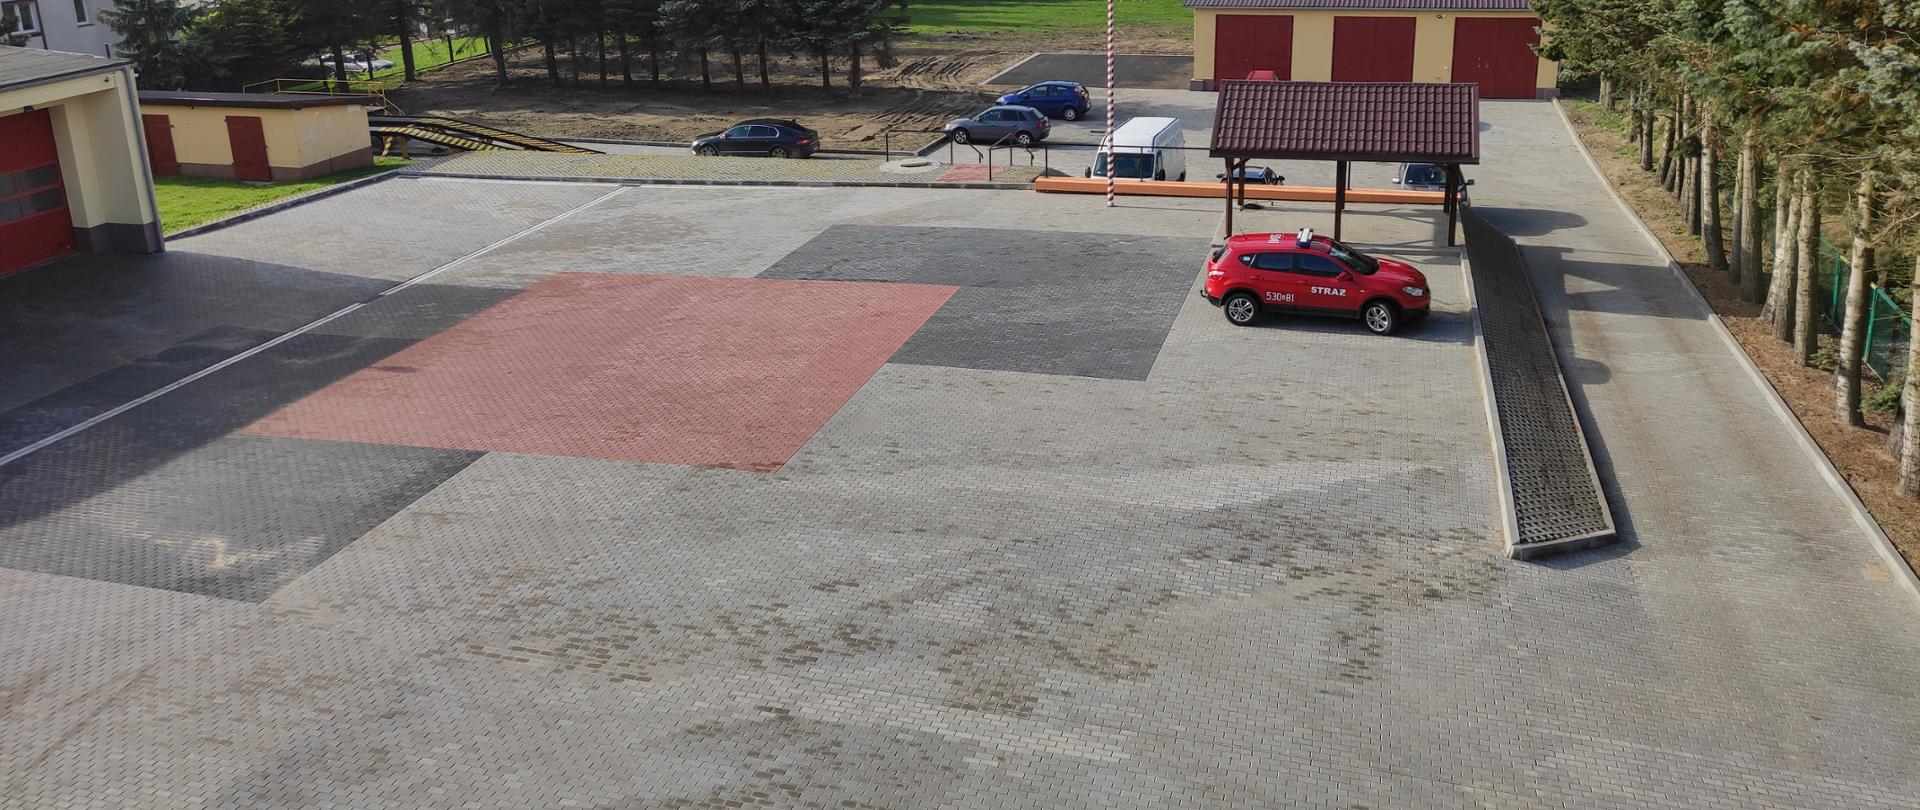 Plac manewrowy pokryty kostką brukową, znajduje się na nim samochód strażacki osobowy koloru czerwonego, masz na flagę w biało czerwone pasy oraz wiata na zabytkową bryczkę, na drugim planie samochody funkcjonariuszy